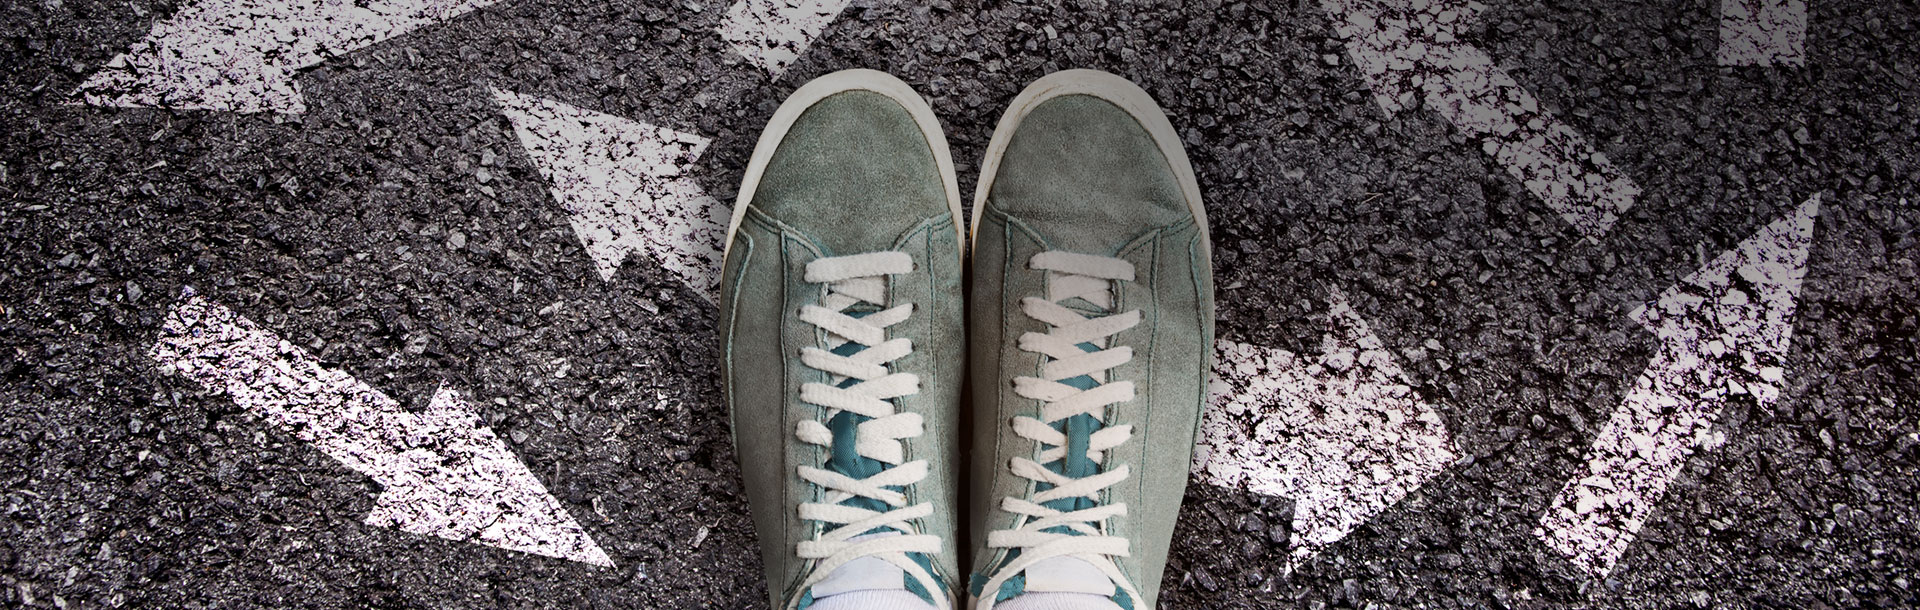 Un par de zapatos en una calle con flechas pintadas